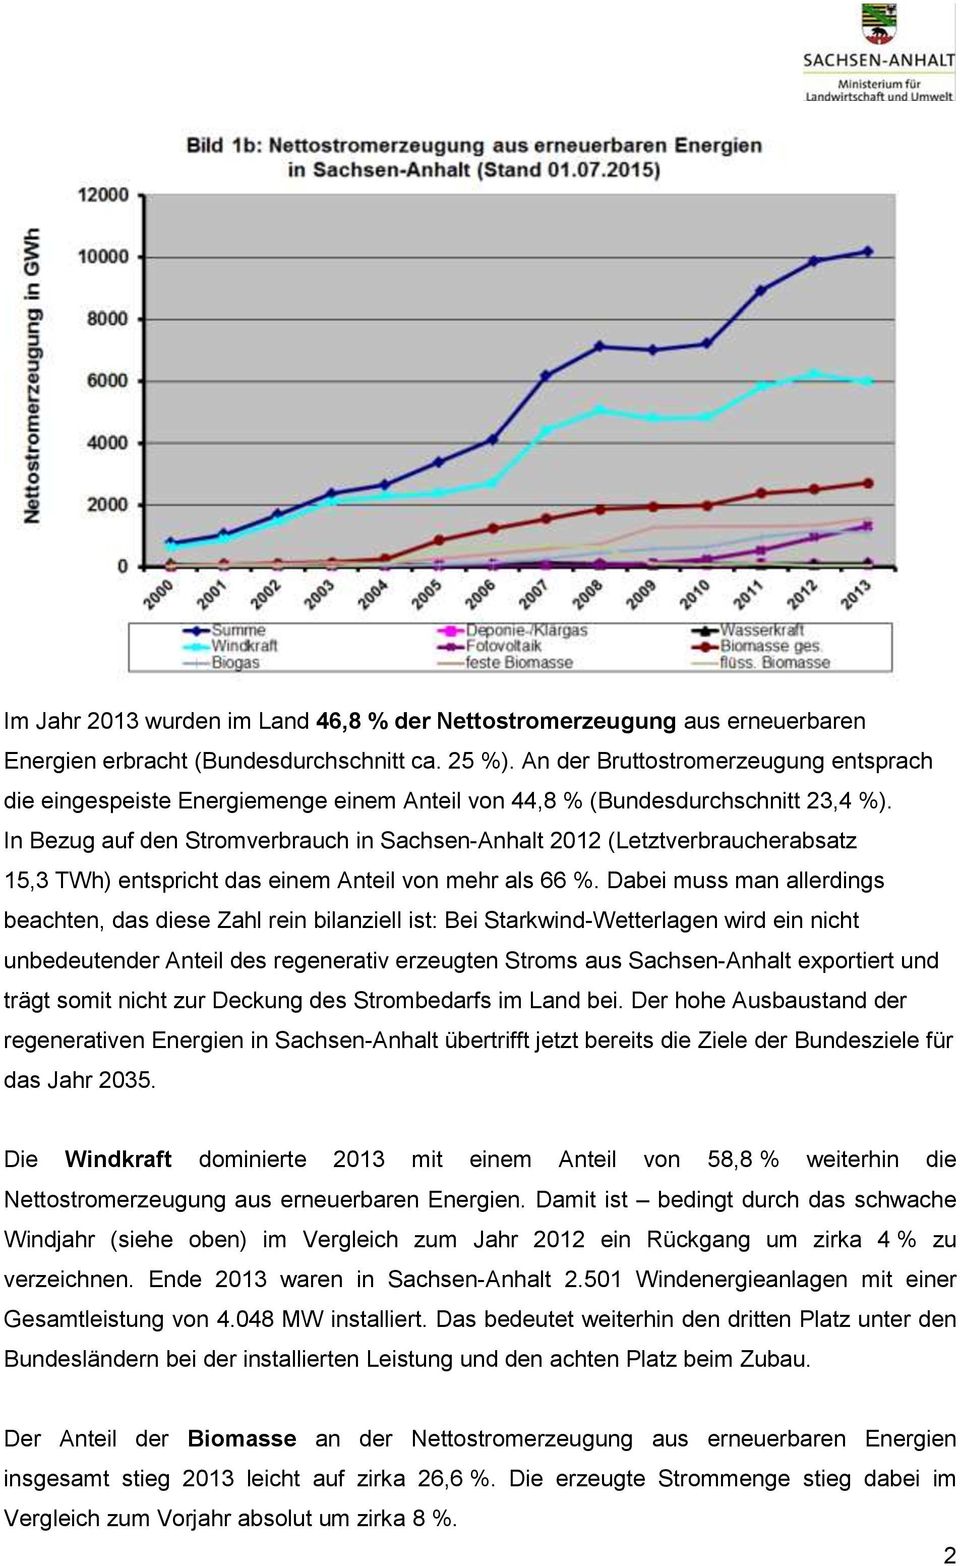 In Bezug auf den Stromverbrauch in Sachsen-Anhalt 2012 (Letztverbraucherabsatz 15,3 TWh) entspricht das einem Anteil von mehr als 66 %.